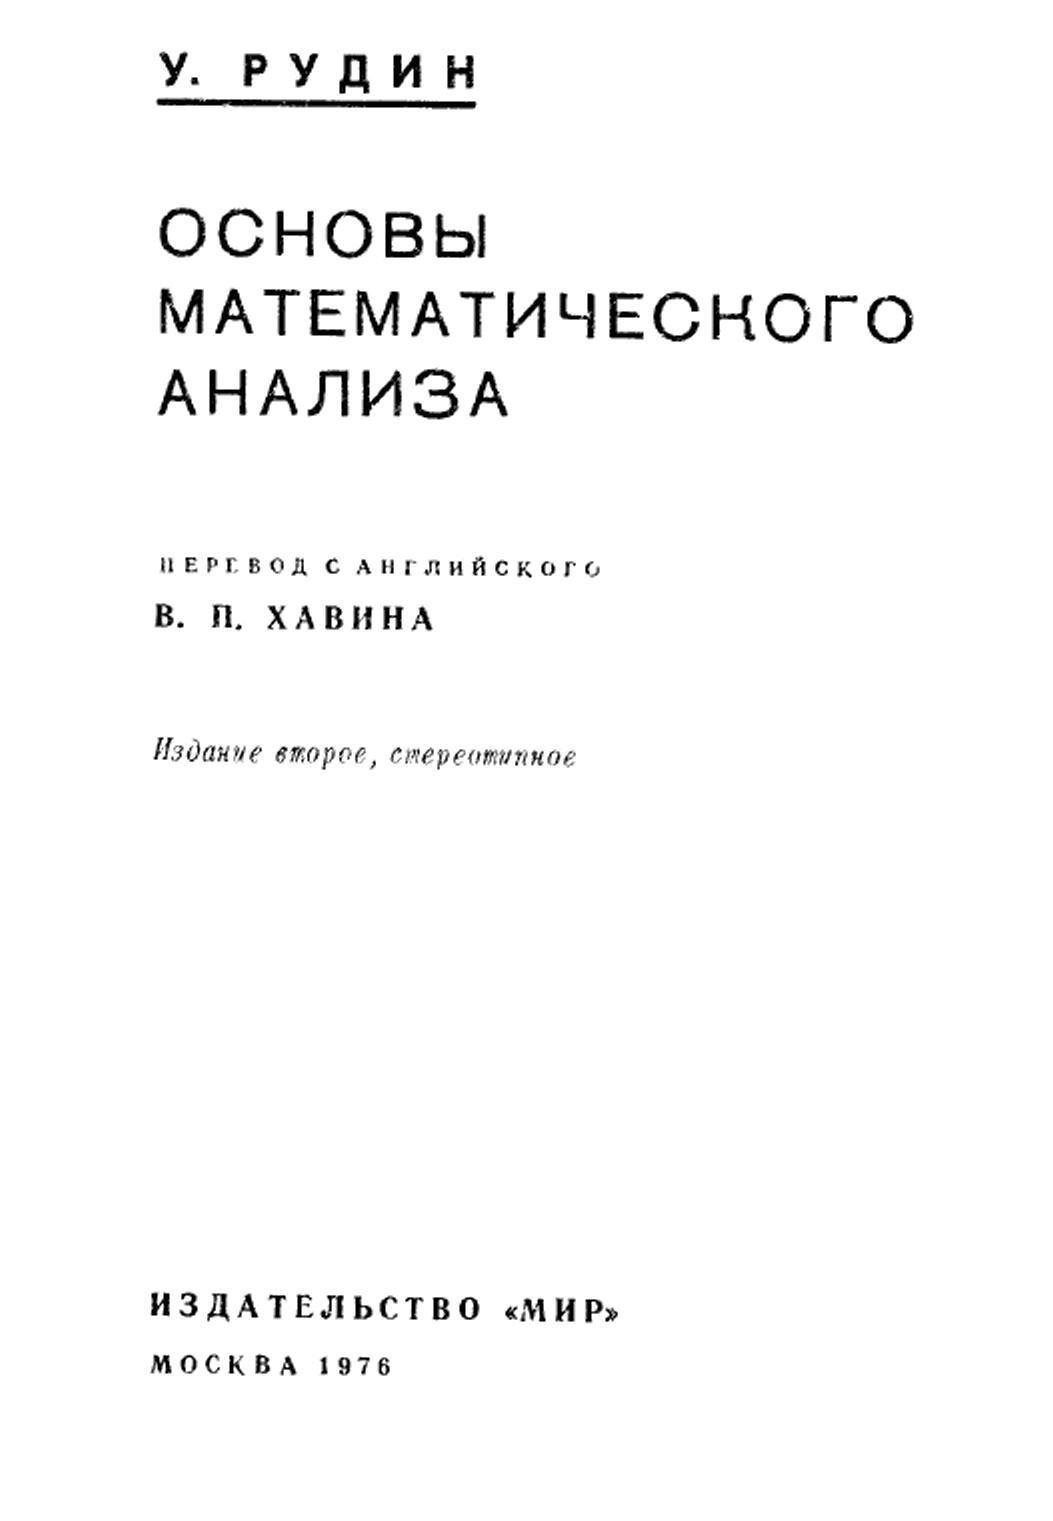 Основы математического анализа, Рудин У., 1976